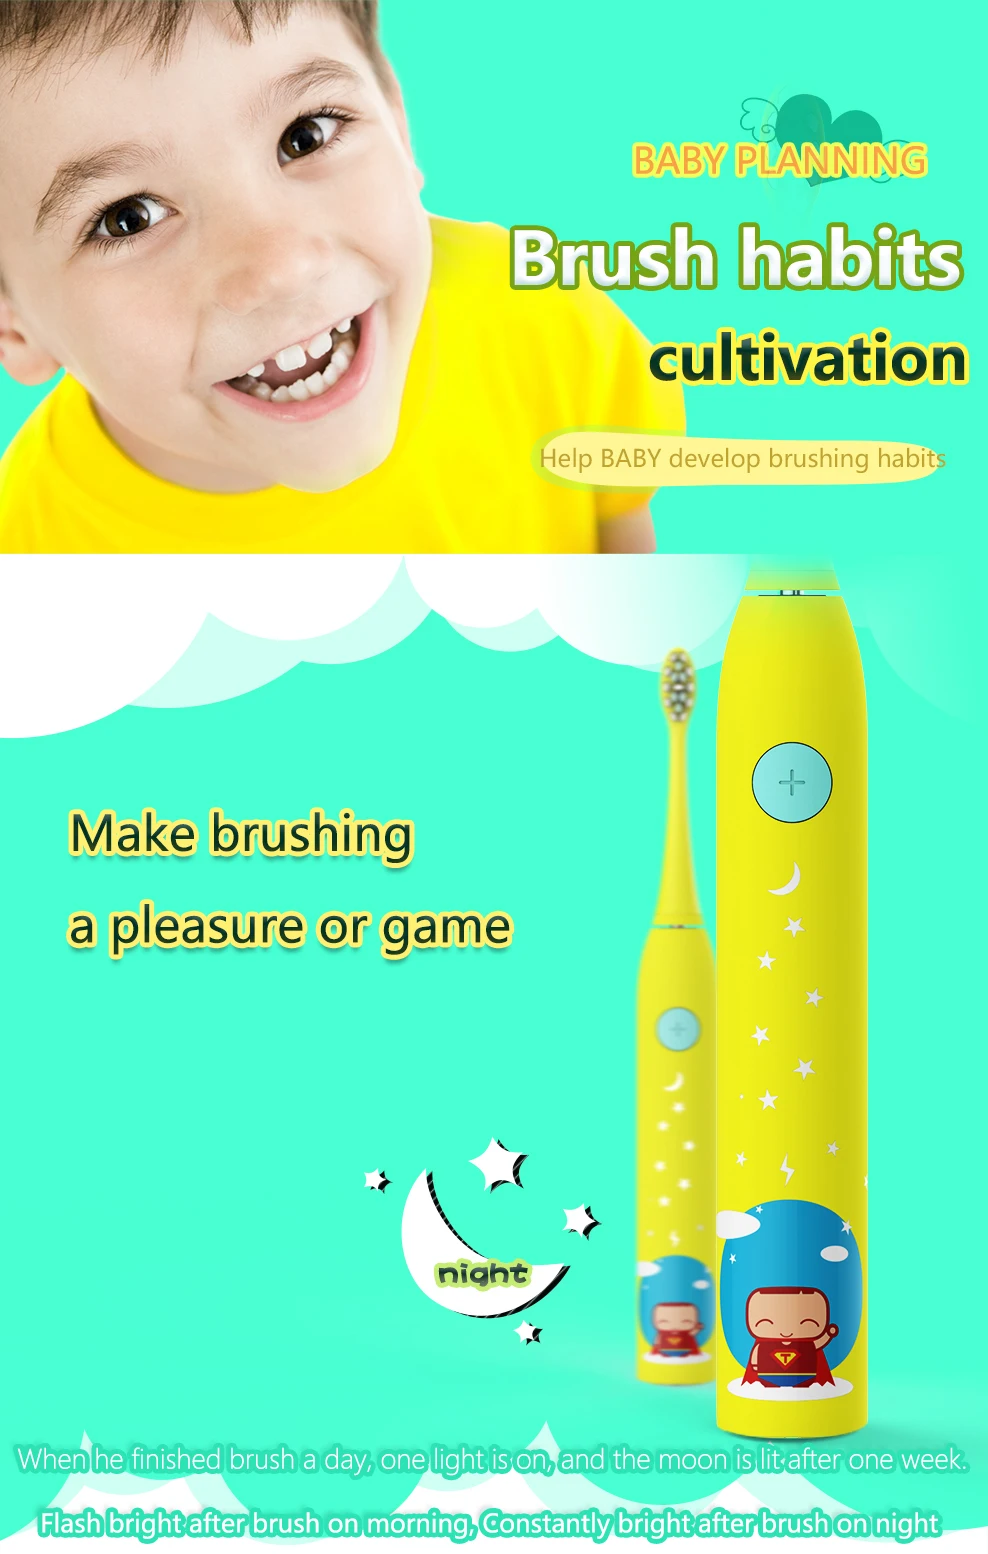 SmartSonic+ Детская электрическая зубная щетка, походная коробка, Беспроводной заряда, желтый, встроенный автоматический таймер, IPX7, светодиодная надпись для выключателя